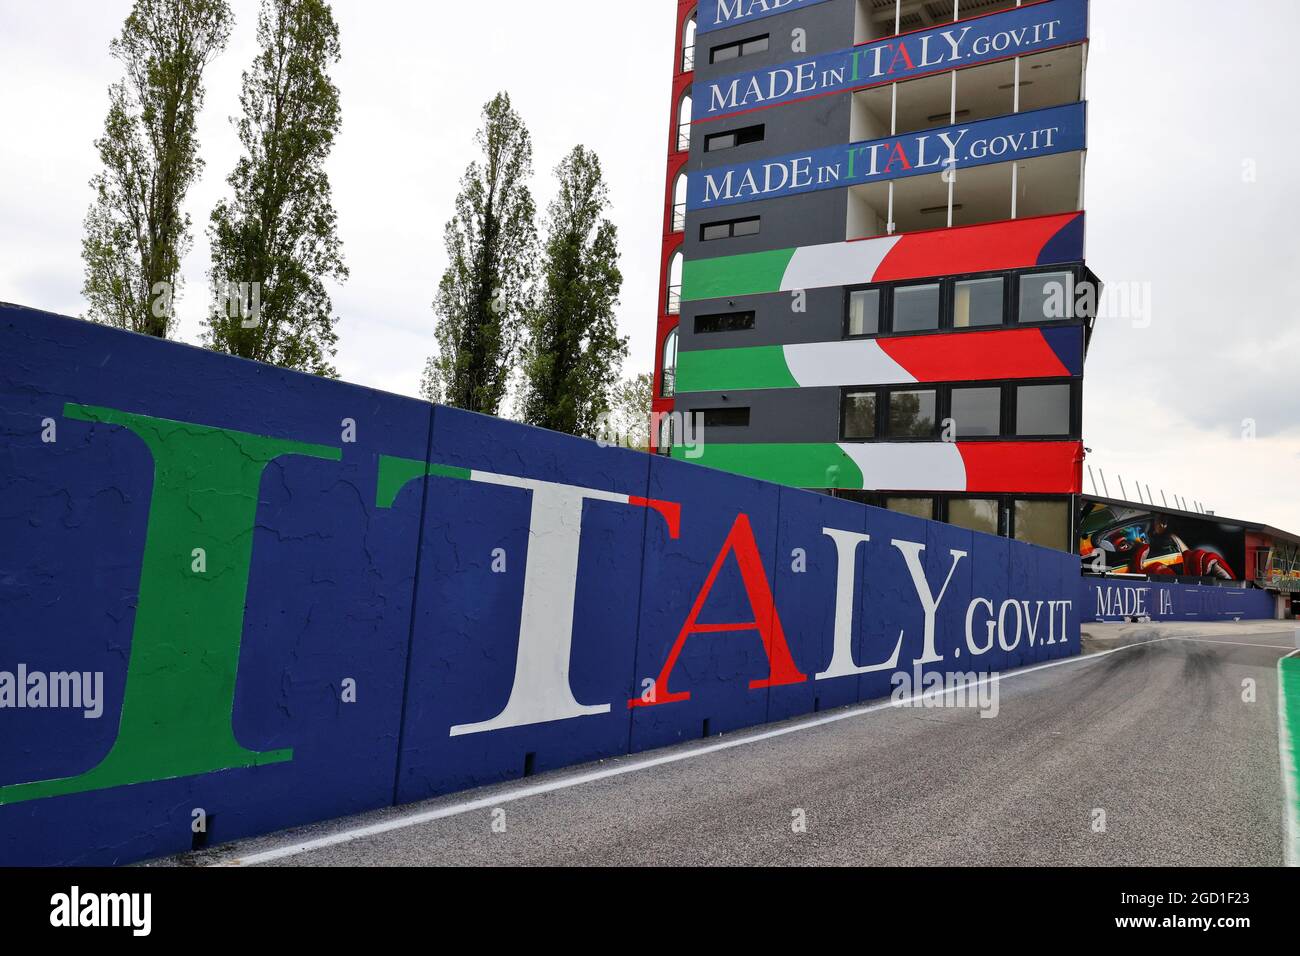 Circuito atmósfera - Made in Italy branding - título de carrera patrocinadores. Gran Premio de Emilia Romagna, jueves 15th de abril de 2021. Imola, Italia. Foto de stock